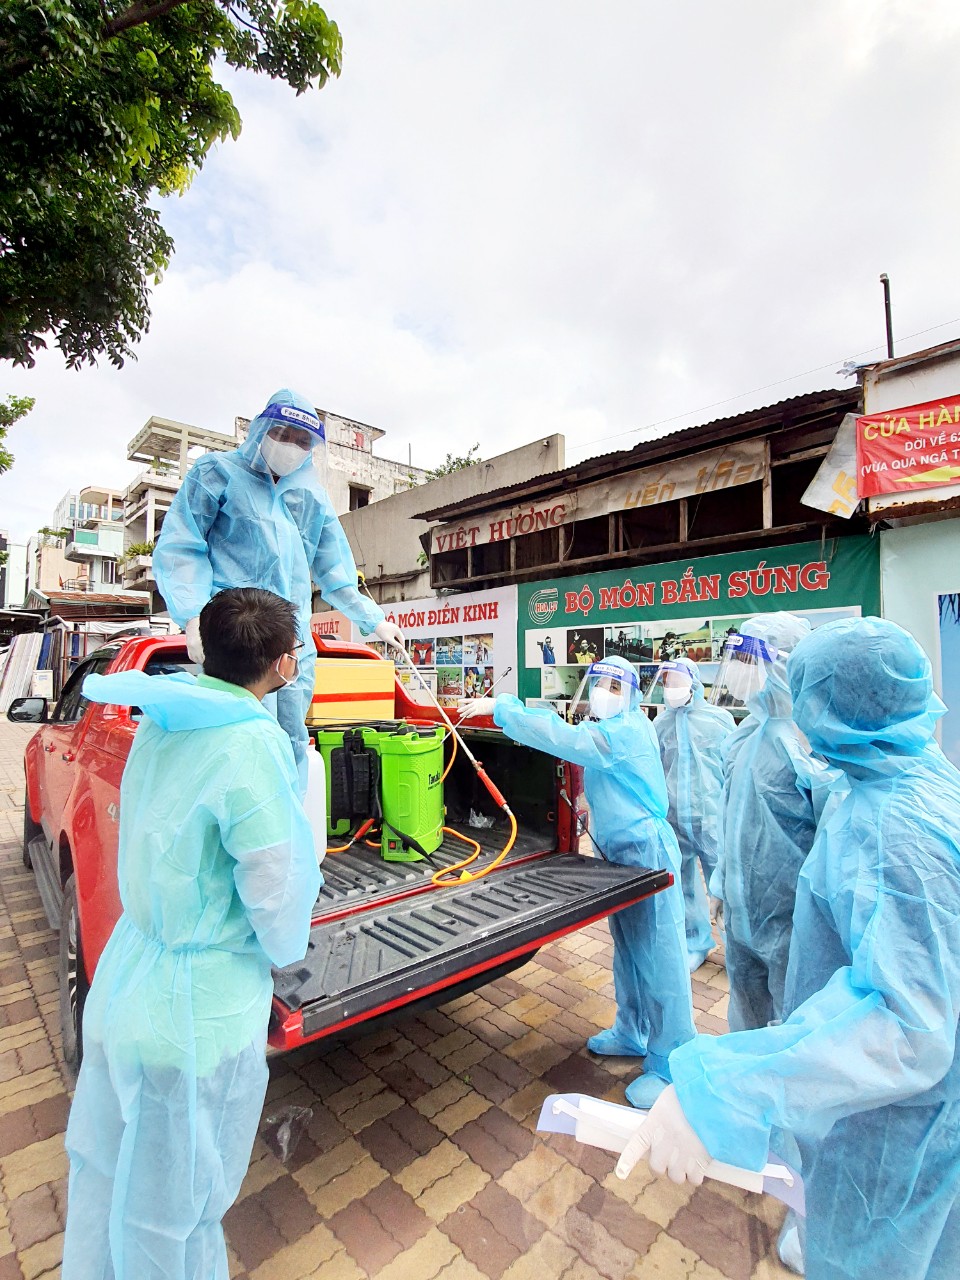 	Thanh niên tình nguyện chuẩn bị dung dịch khử khuẩn hỗ trợ các bệnh viện dã chiến và vùng phong tỏa ở TP. Hồ Chí Minh